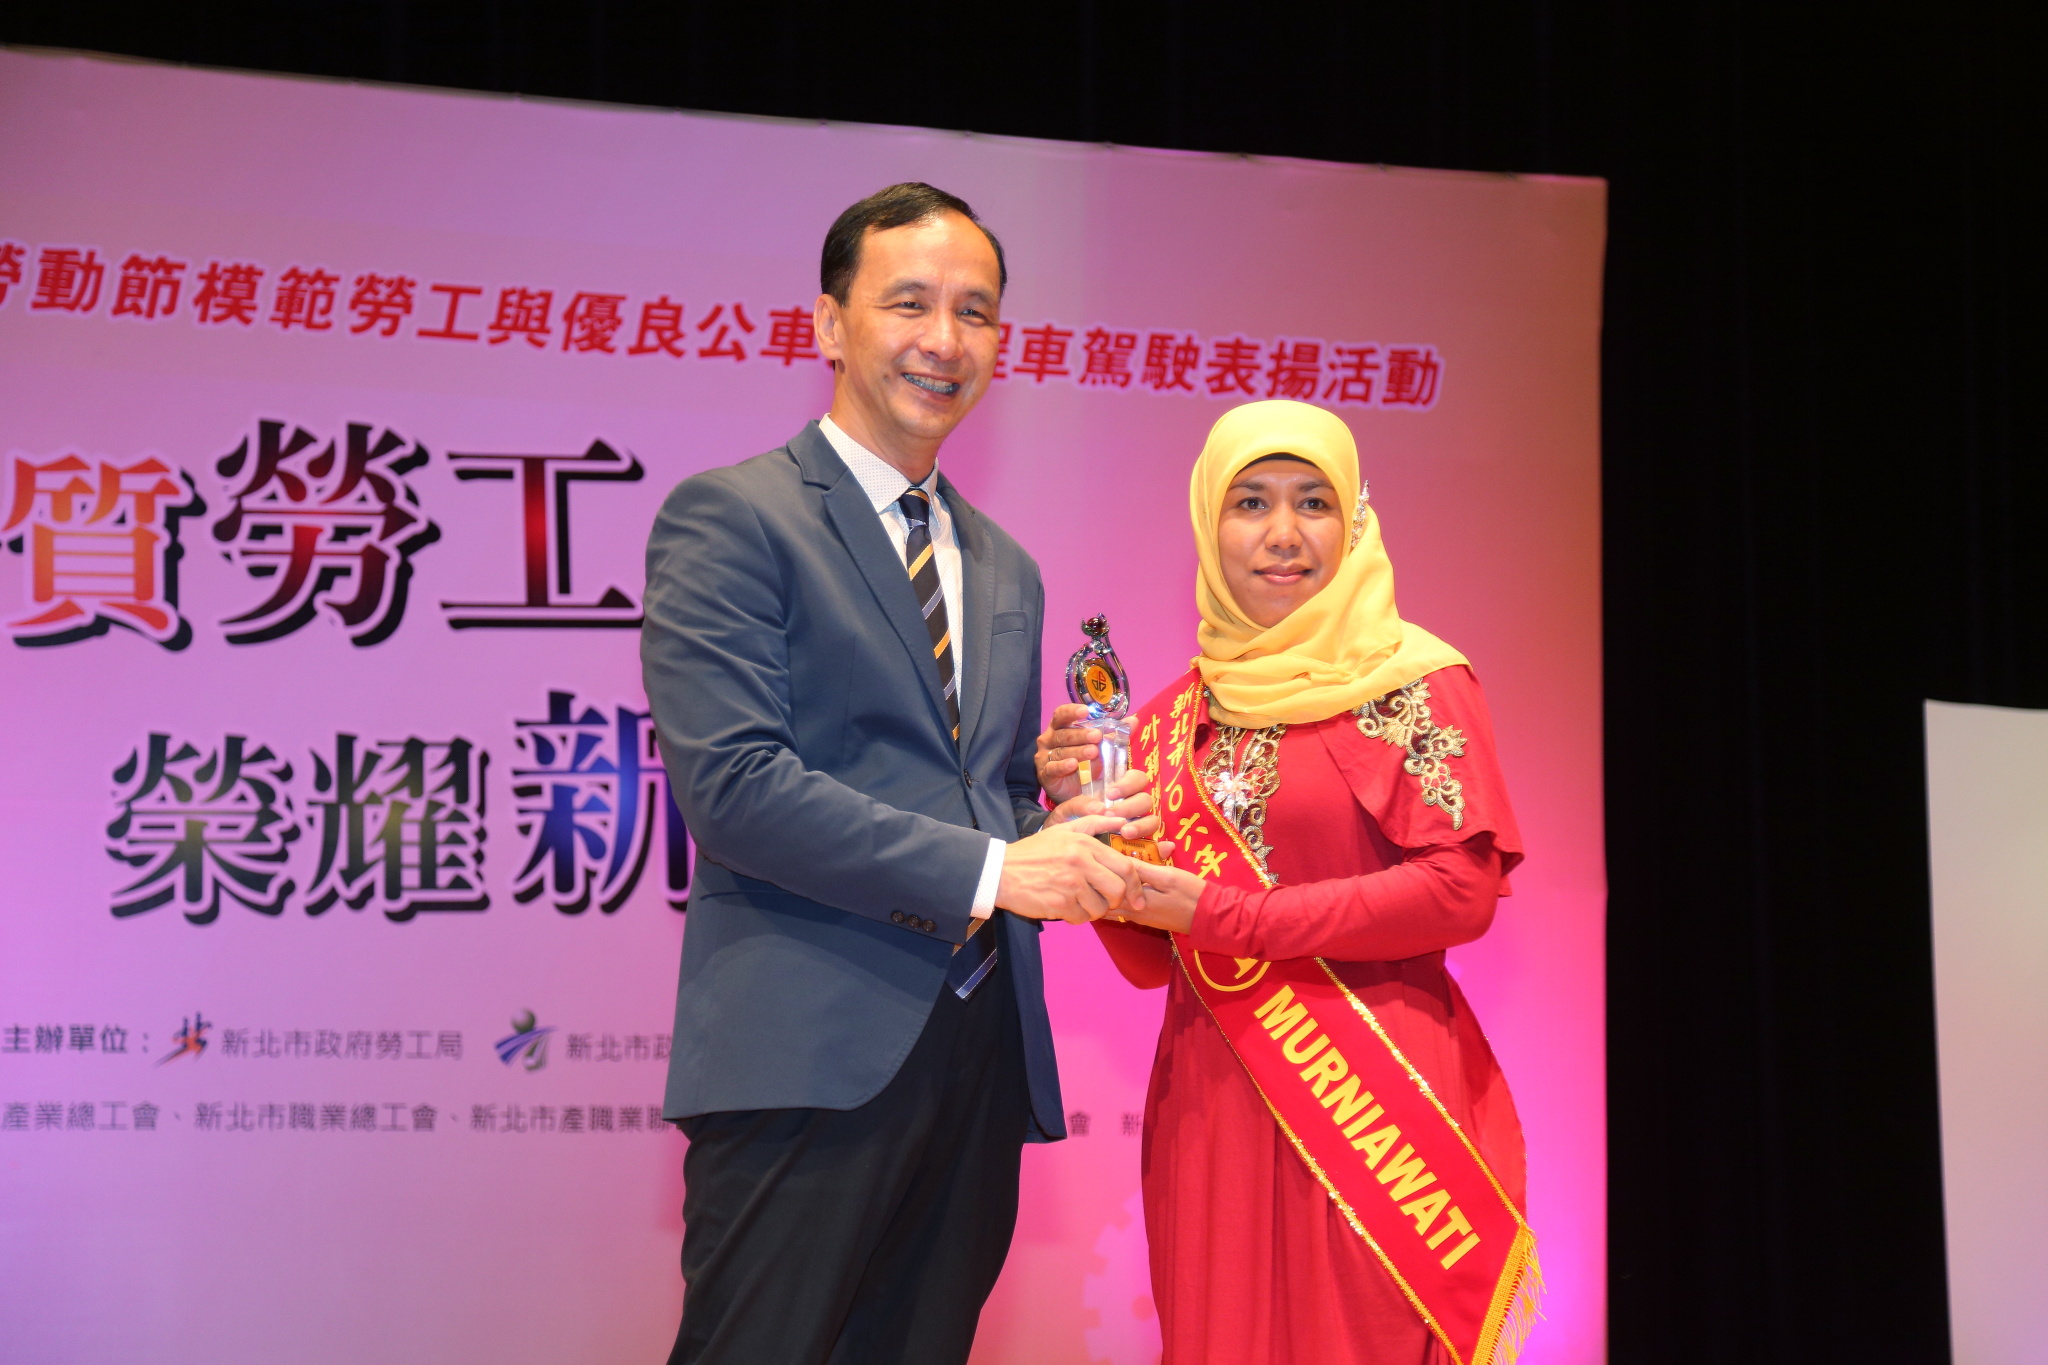 朱市長頒獎表揚來自異鄉的模範外籍勞工